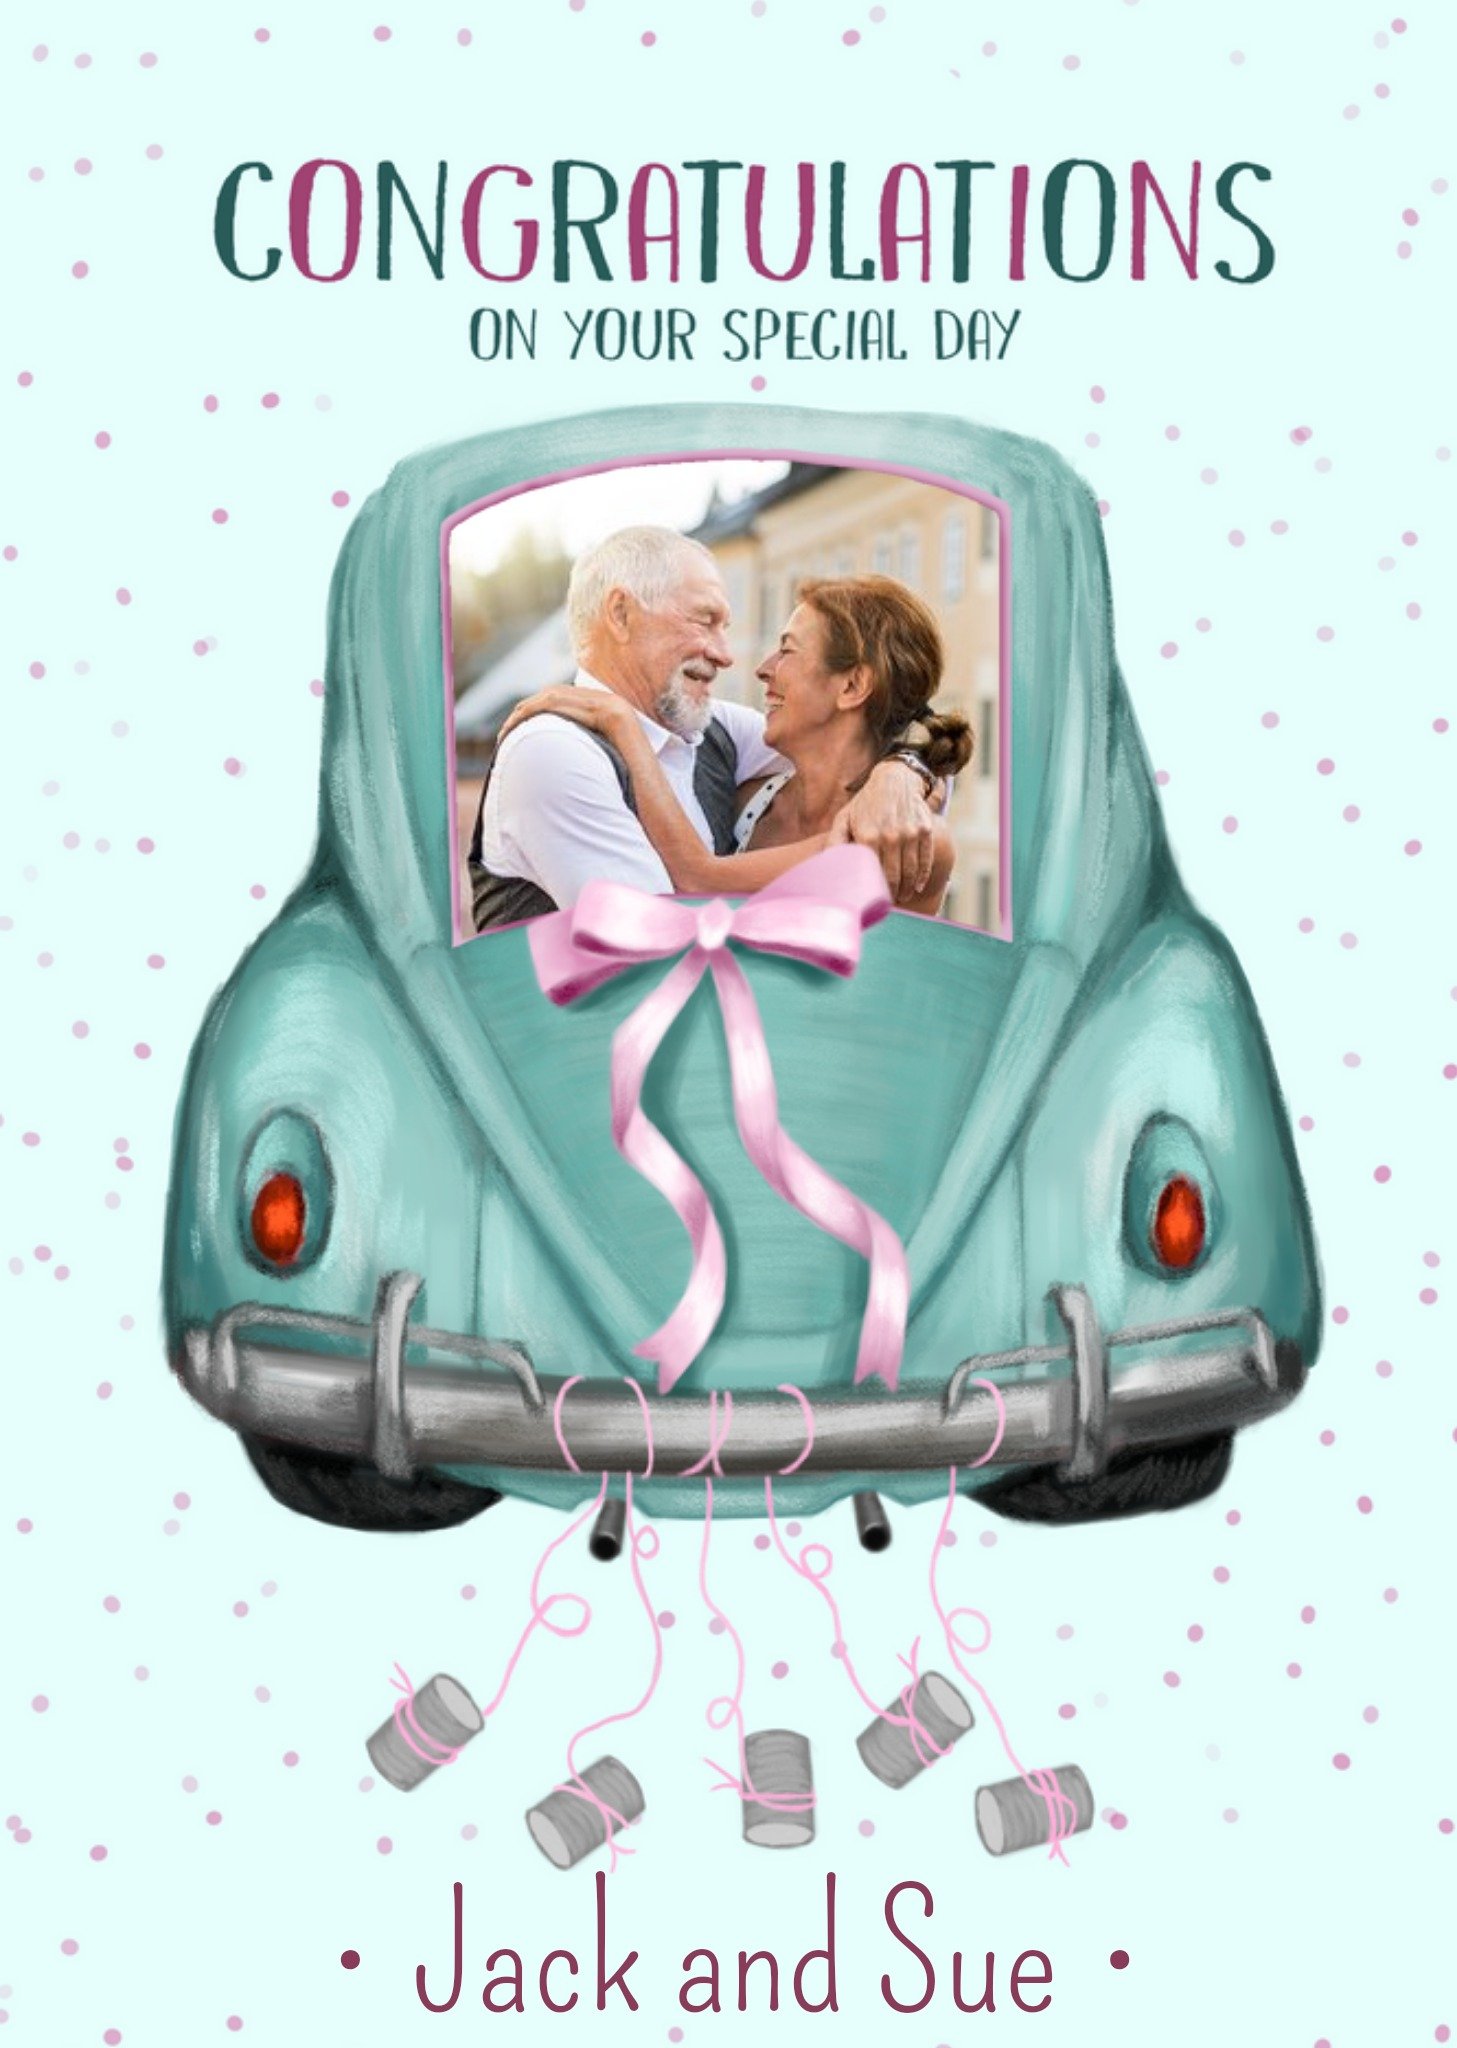 Moonpig Car Photo Upload Congratulations Wedding Card Ecard